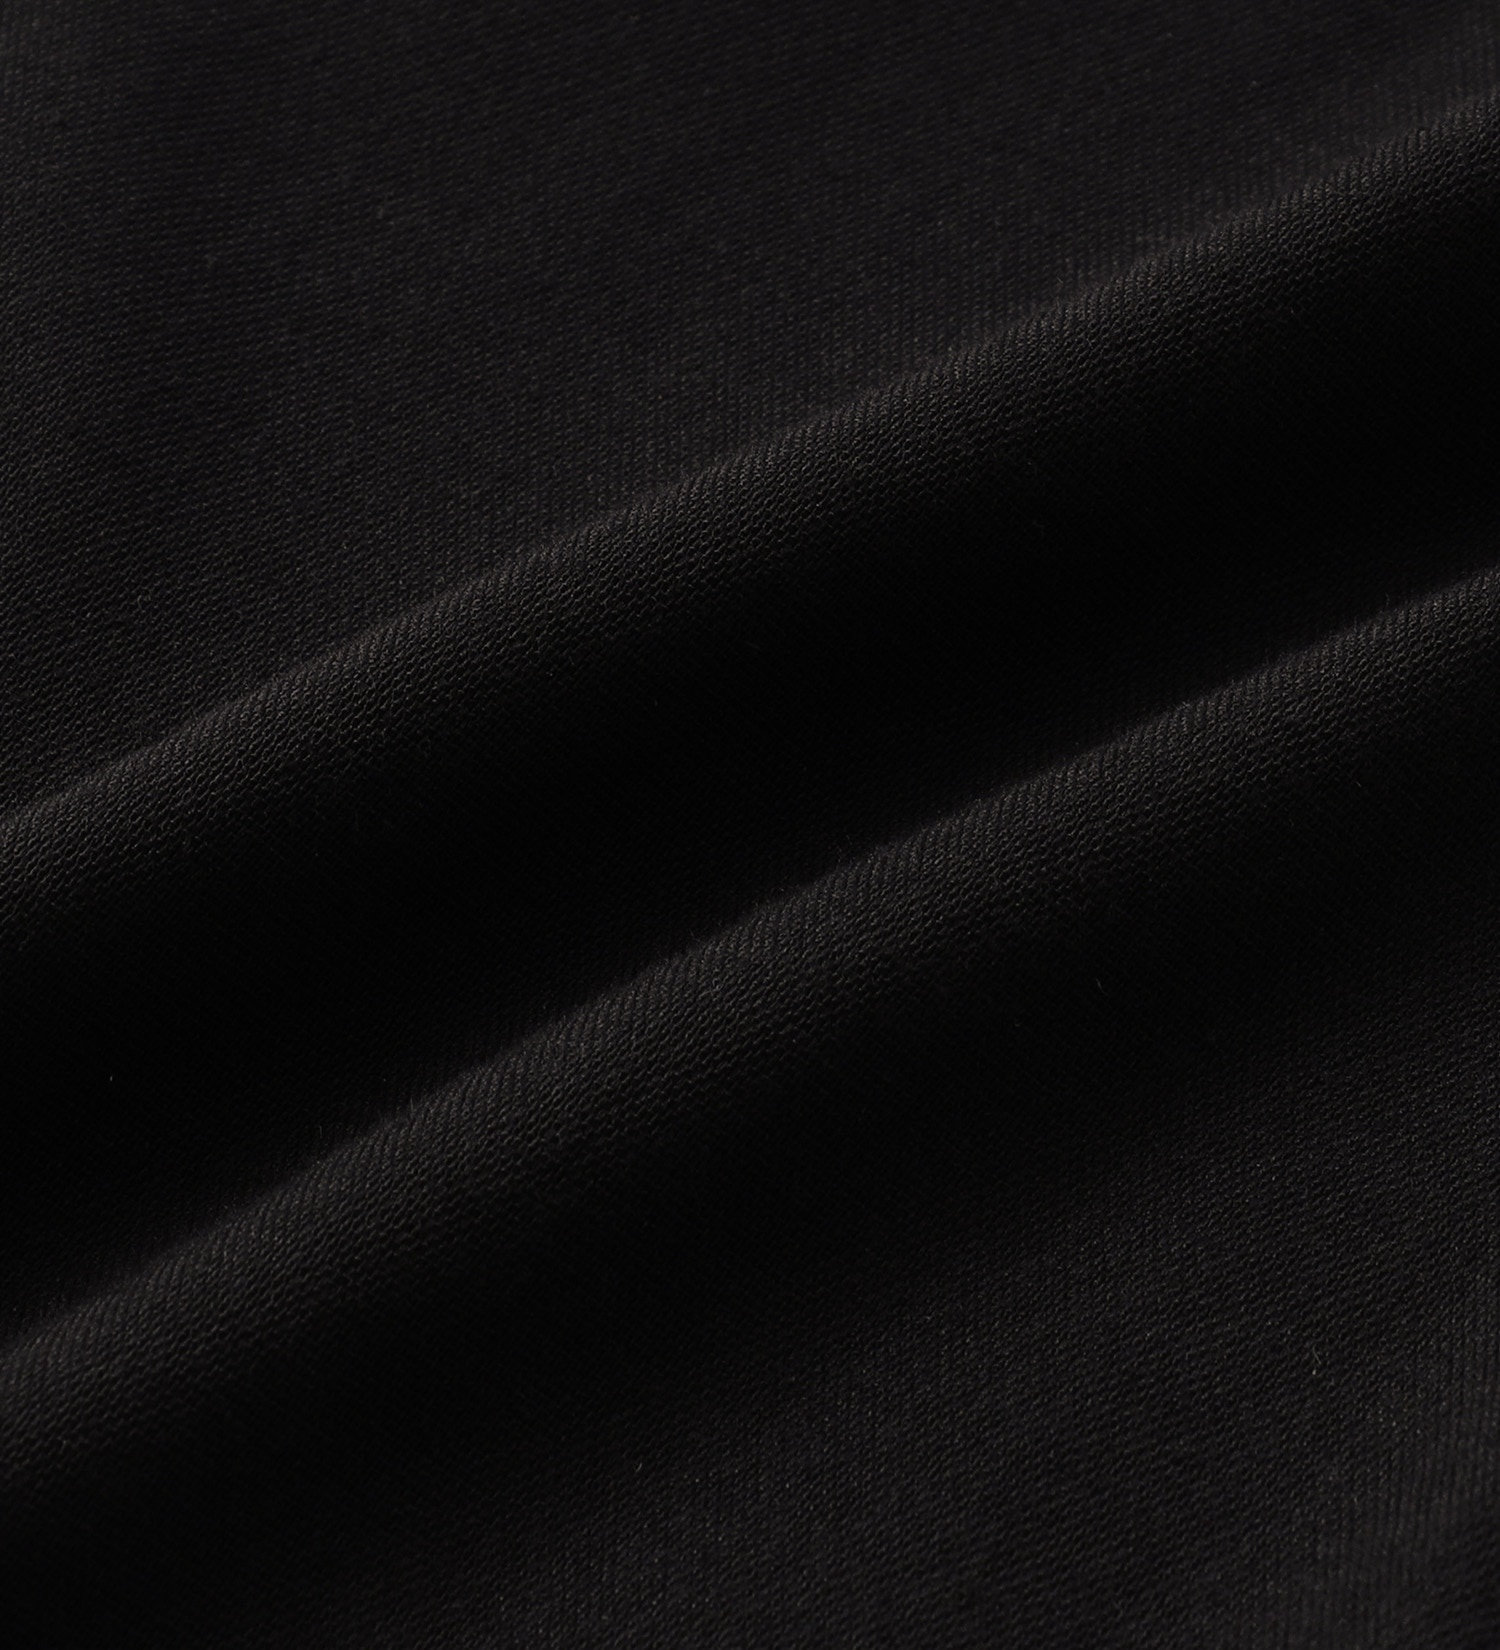 EDWIN(エドウイン)の【BLACKFRIDAY】EDWIN【涼】サマー レギュラーストレートパンツ【アウトレット店舗・WEB限定】|パンツ/パンツ/レディース|ブラック